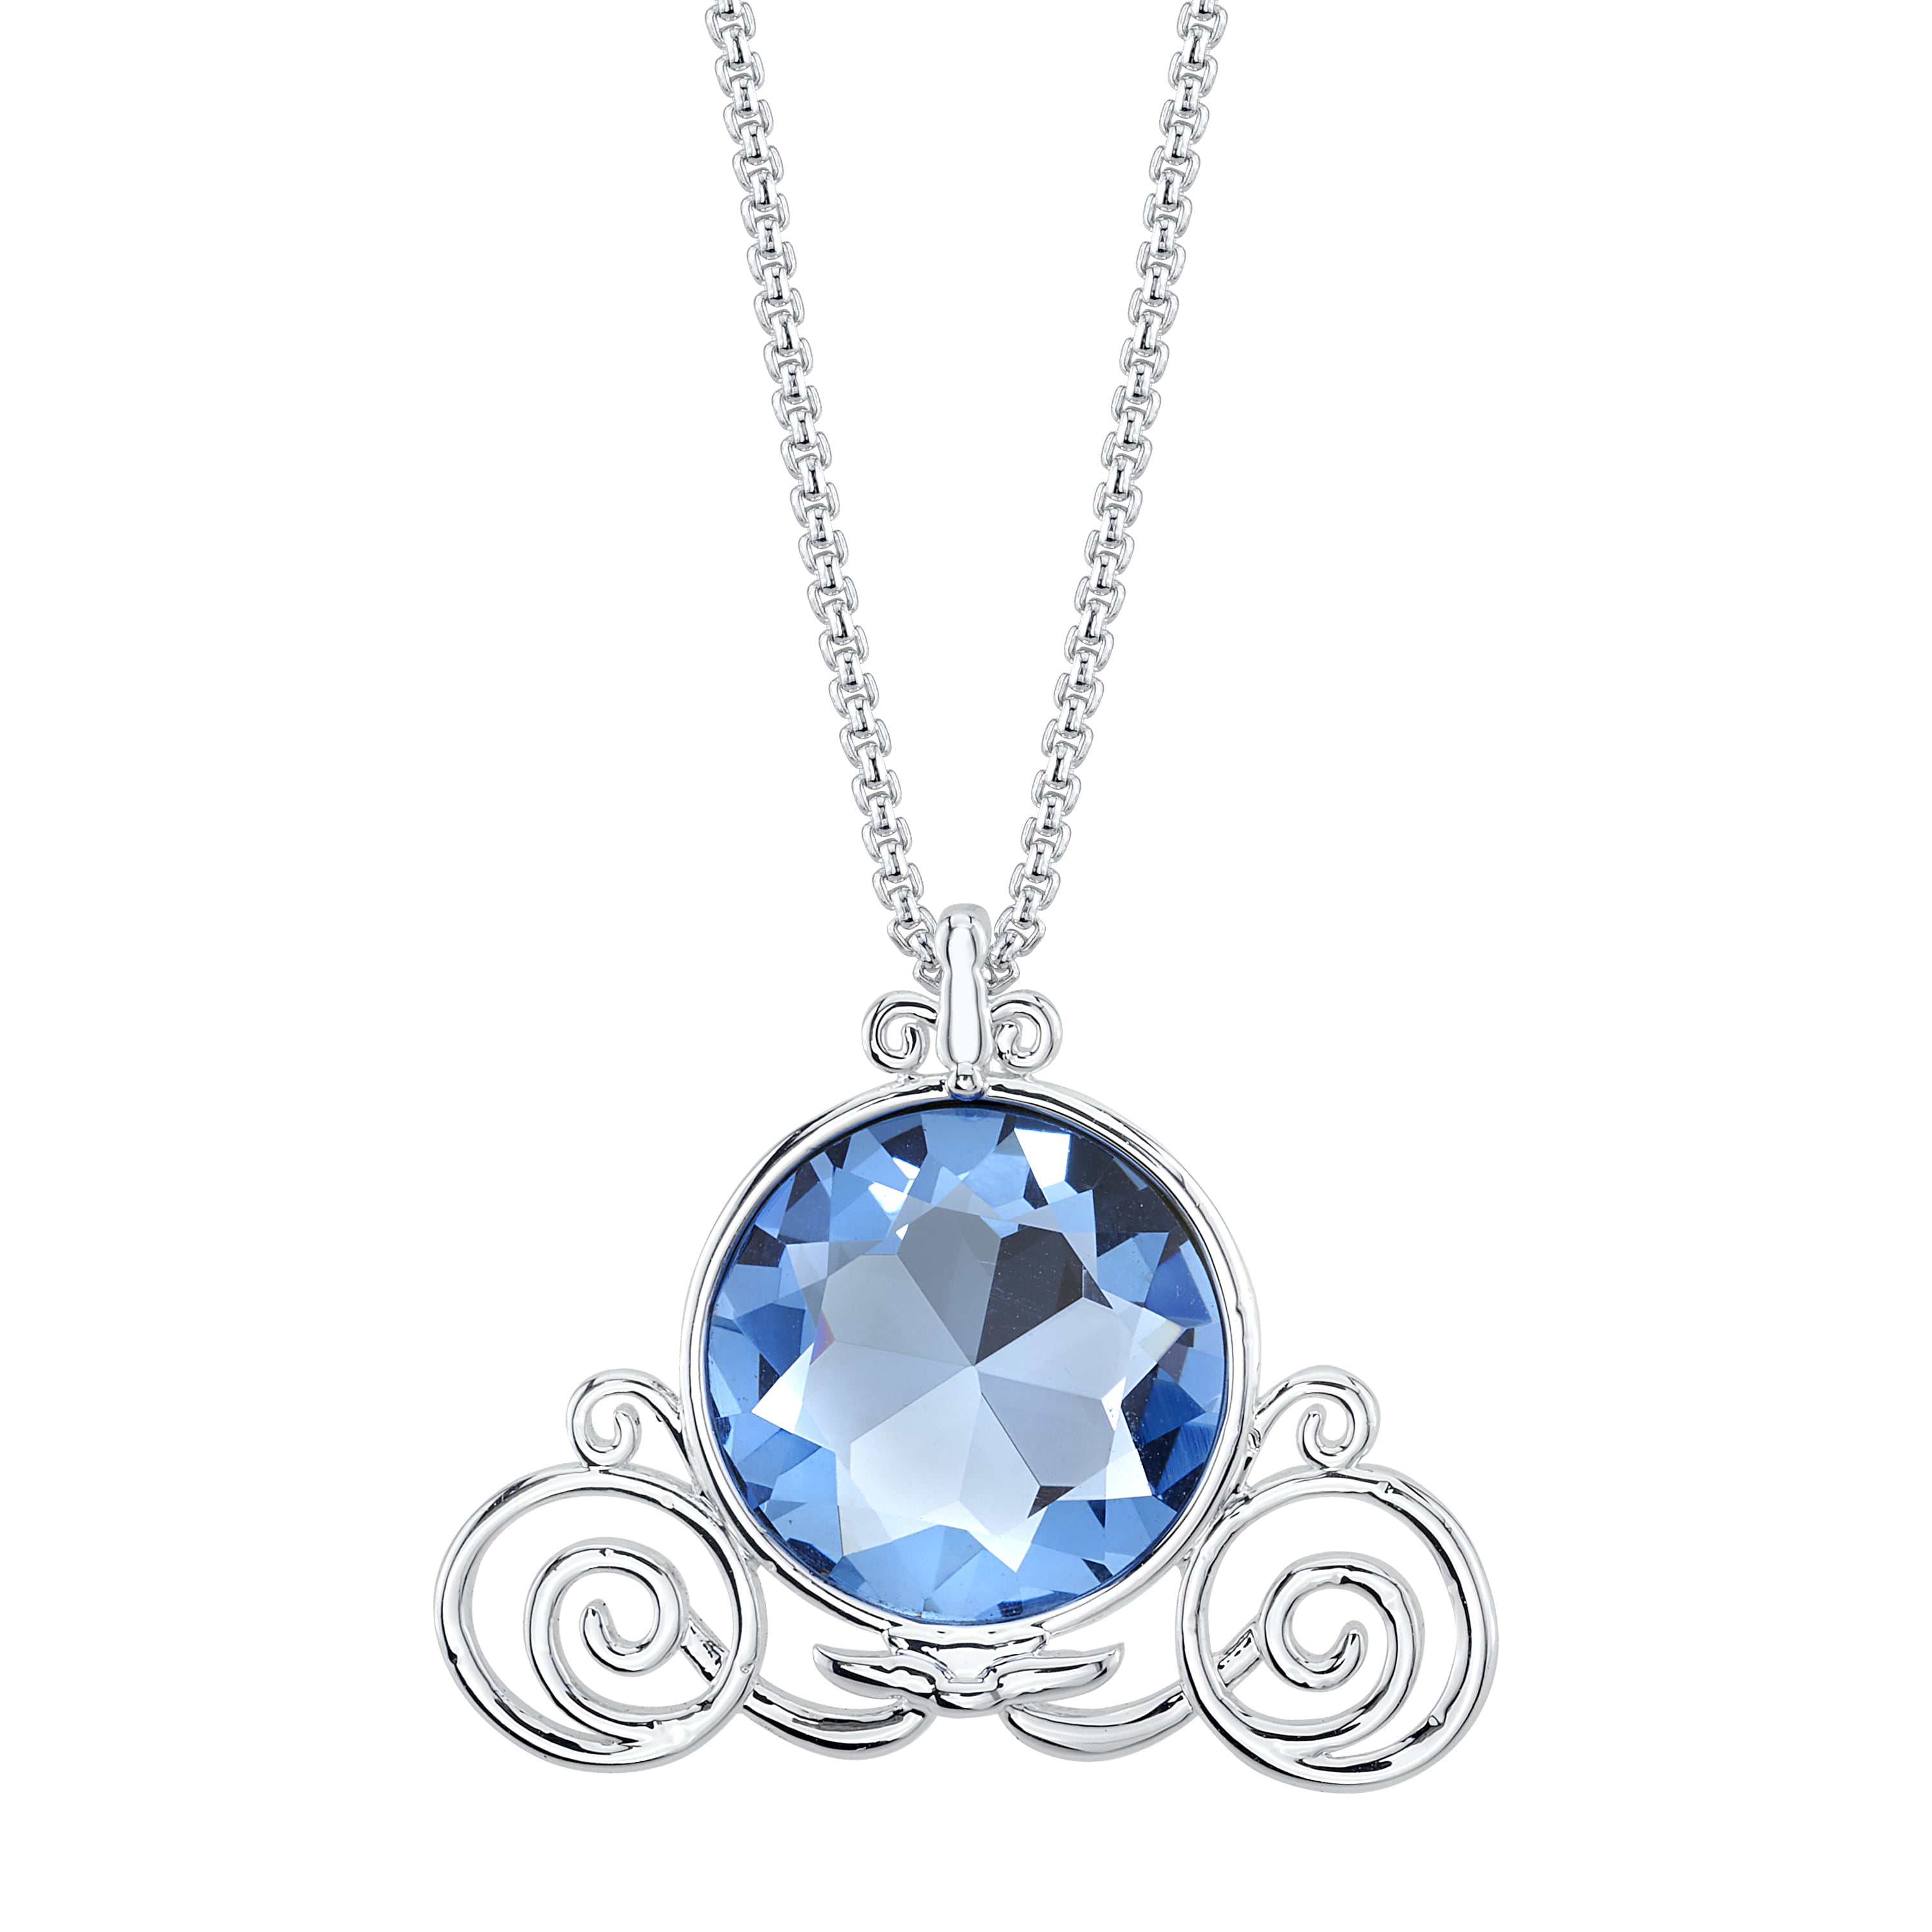 Pandora - Disney, Cinderella's Carriage Collier Necklace